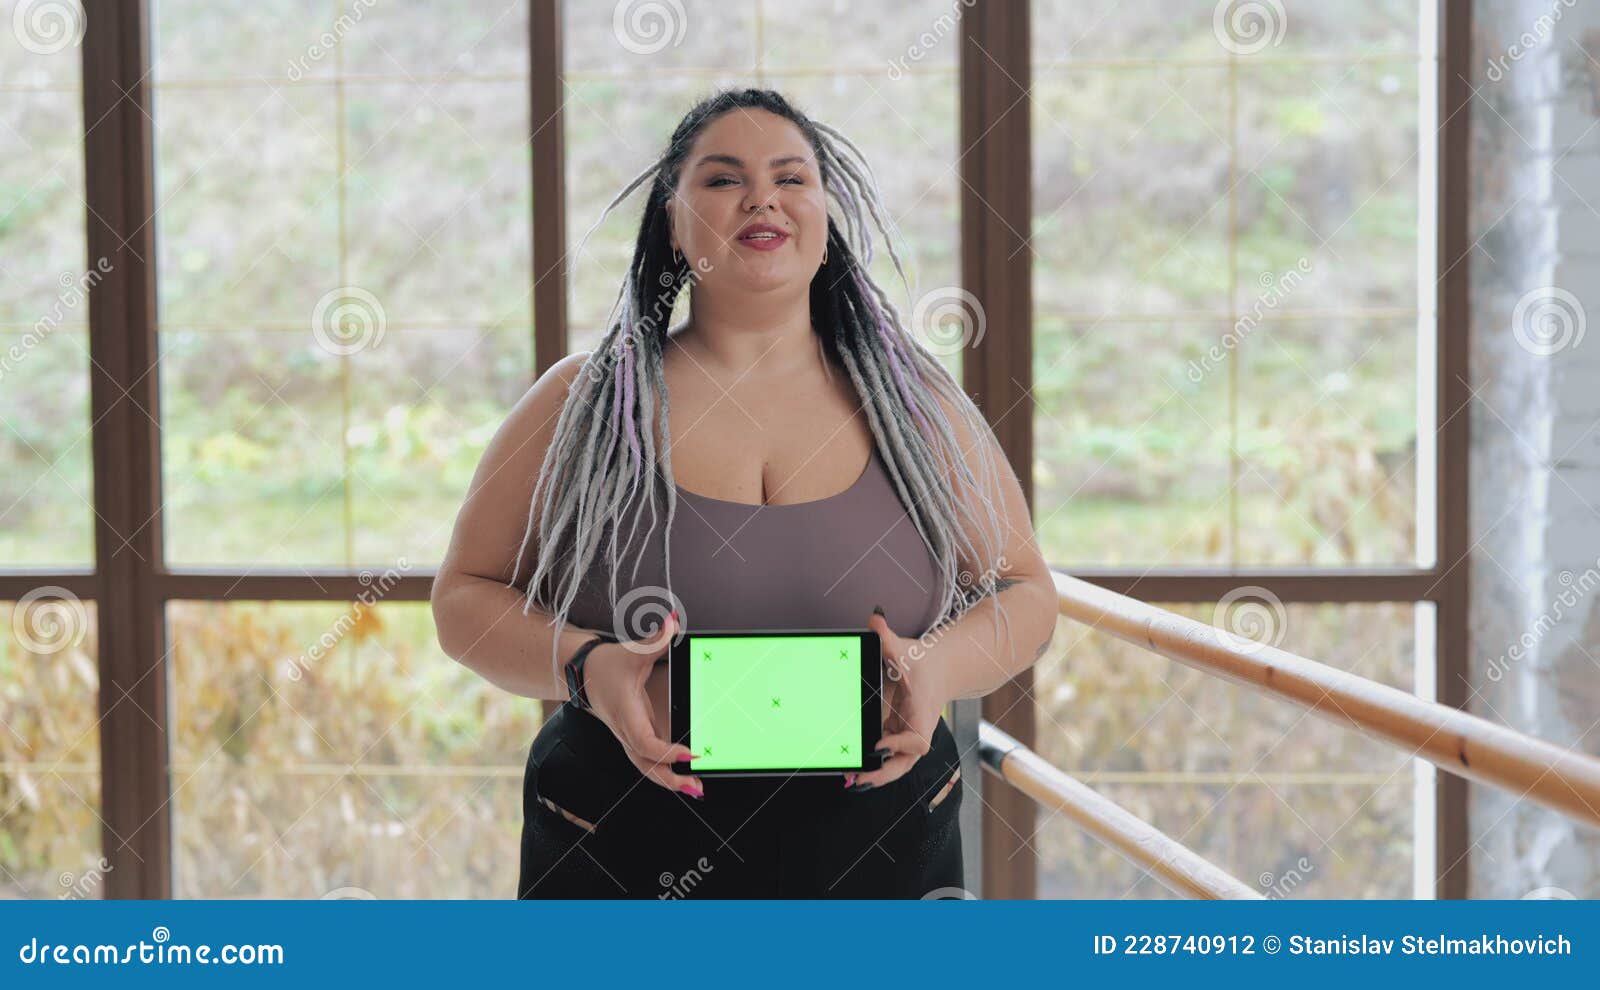 Happy Fat Woman in Underwear with Drearlocks Holding Green Screen